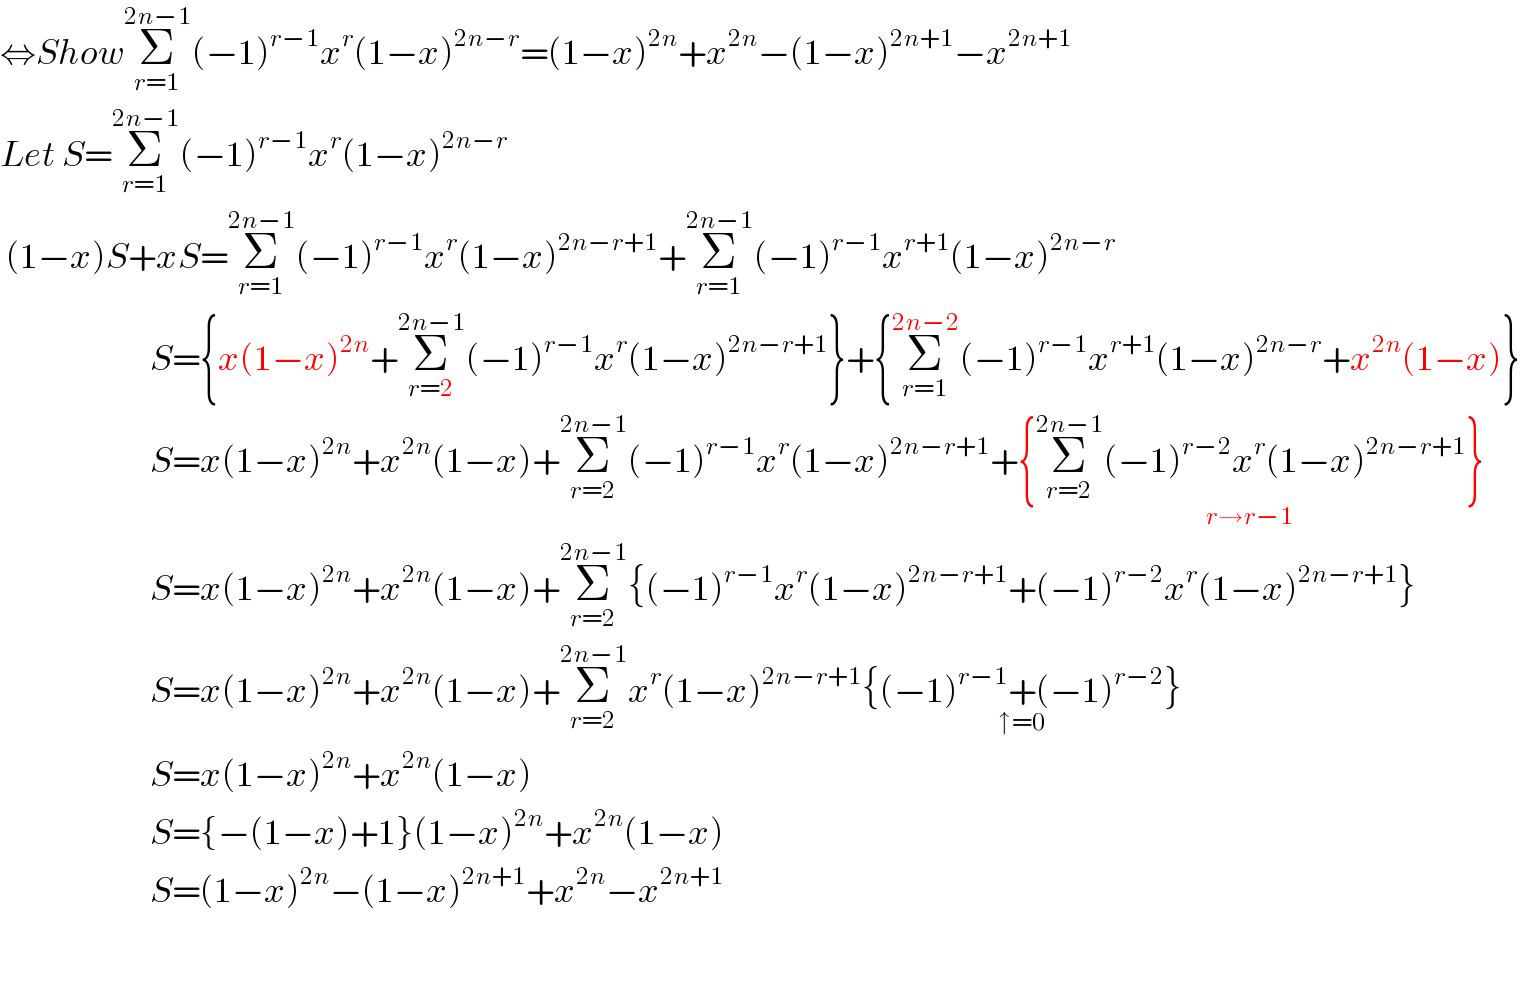 ⇔ShowΣ_(r=1) ^(2n−1) (−1)^(r−1) x^r (1−x)^(2n−r) =(1−x)^(2n) +x^(2n) −(1−x)^(2n+1) −x^(2n+1)   Let S=Σ_(r=1) ^(2n−1) (−1)^(r−1) x^r (1−x)^(2n−r)    (1−x)S+xS=Σ_(r=1) ^(2n−1) (−1)^(r−1) x^r (1−x)^(2n−r+1) +Σ_(r=1) ^(2n−1) (−1)^(r−1) x^(r+1) (1−x)^(2n−r)                            S={x(1−x)^(2n) +Σ_(r=2) ^(2n−1) (−1)^(r−1) x^r (1−x)^(2n−r+1) }+{Σ_(r=1) ^(2n−2) (−1)^(r−1) x^(r+1) (1−x)^(2n−r) +x^(2n) (1−x)}                           S=x(1−x)^(2n) +x^(2n) (1−x)+Σ_(r=2) ^(2n−1) (−1)^(r−1) x^r (1−x)^(2n−r+1) +{Σ_(r=2) ^(2n−1) (−1)^(r−2) x^r (1−x)^(2n−r+1) }_(r→r−1)                            S=x(1−x)^(2n) +x^(2n) (1−x)+Σ_(r=2) ^(2n−1) {(−1)^(r−1) x^r (1−x)^(2n−r+1) +(−1)^(r−2) x^r (1−x)^(2n−r+1) }                           S=x(1−x)^(2n) +x^(2n) (1−x)+Σ_(r=2) ^(2n−1) x^r (1−x)^(2n−r+1) {(−1)^(r−1) +(−1)^(r−2) }_(↑=0)                            S=x(1−x)^(2n) +x^(2n) (1−x)                           S={−(1−x)+1}(1−x)^(2n) +x^(2n) (1−x)                           S=(1−x)^(2n) −(1−x)^(2n+1) +x^(2n) −x^(2n+1)     